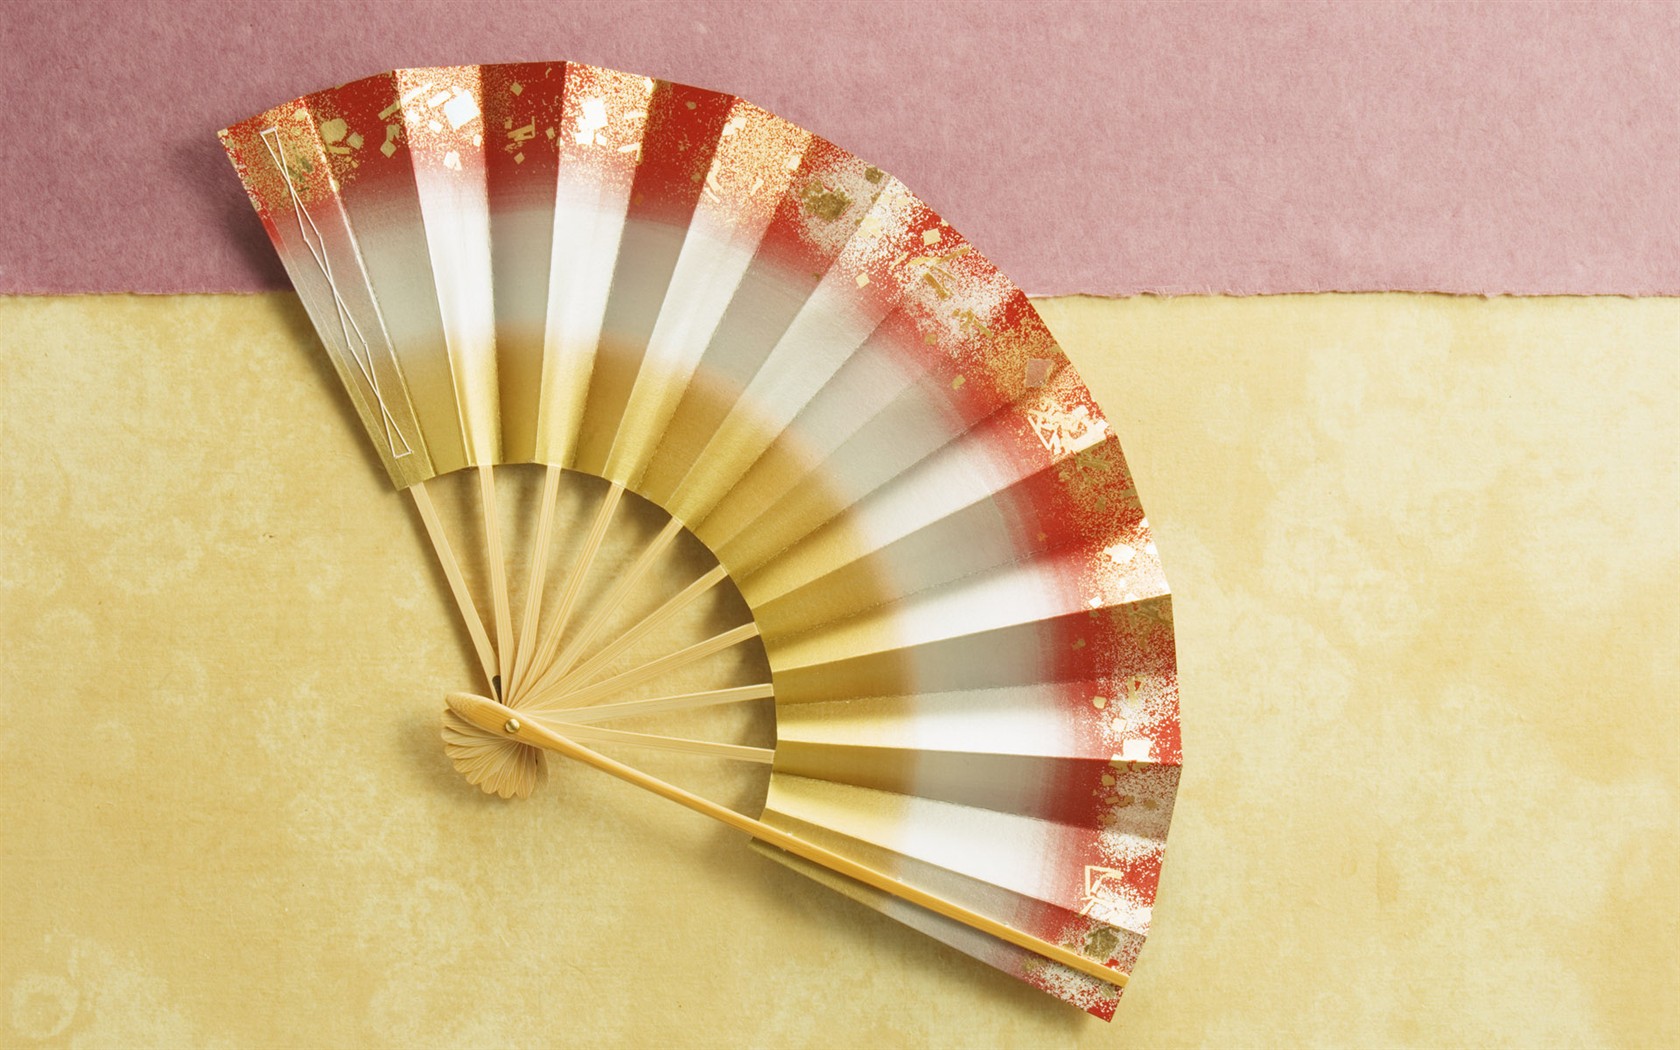 Fondos de año nuevo japonés Cultura #12 - 1680x1050